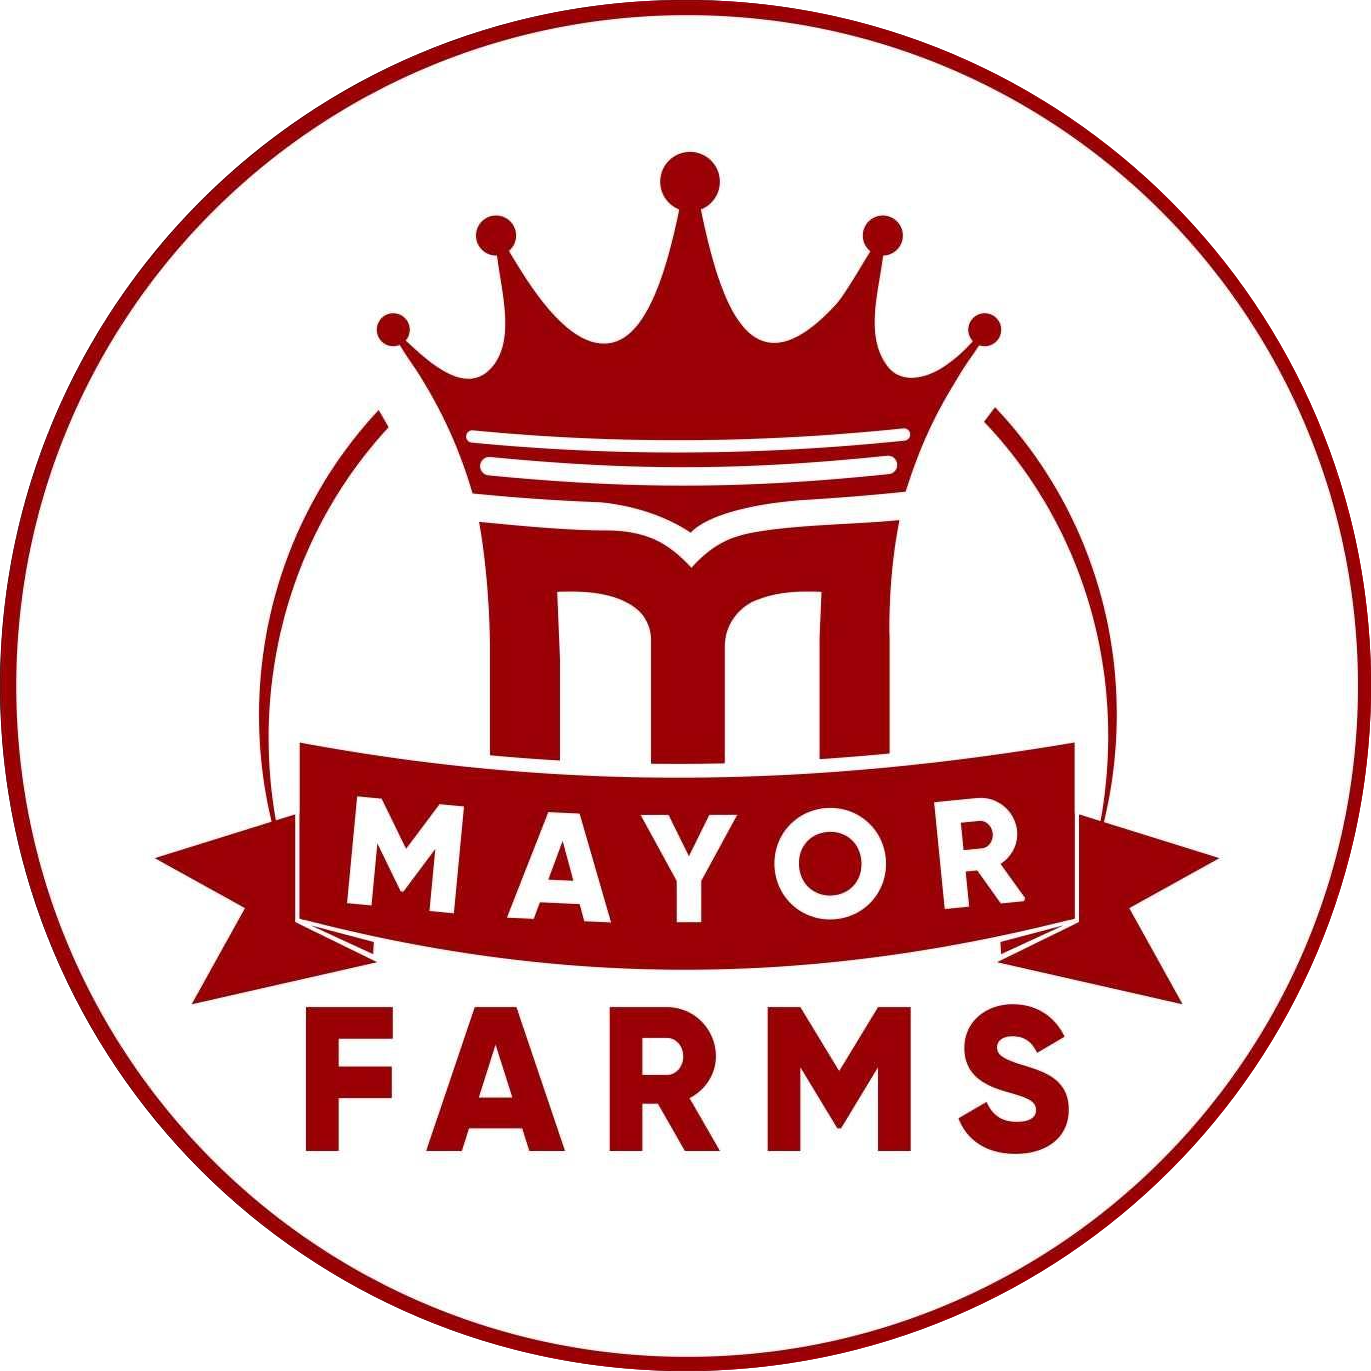 Mayor Farms & Agro Services